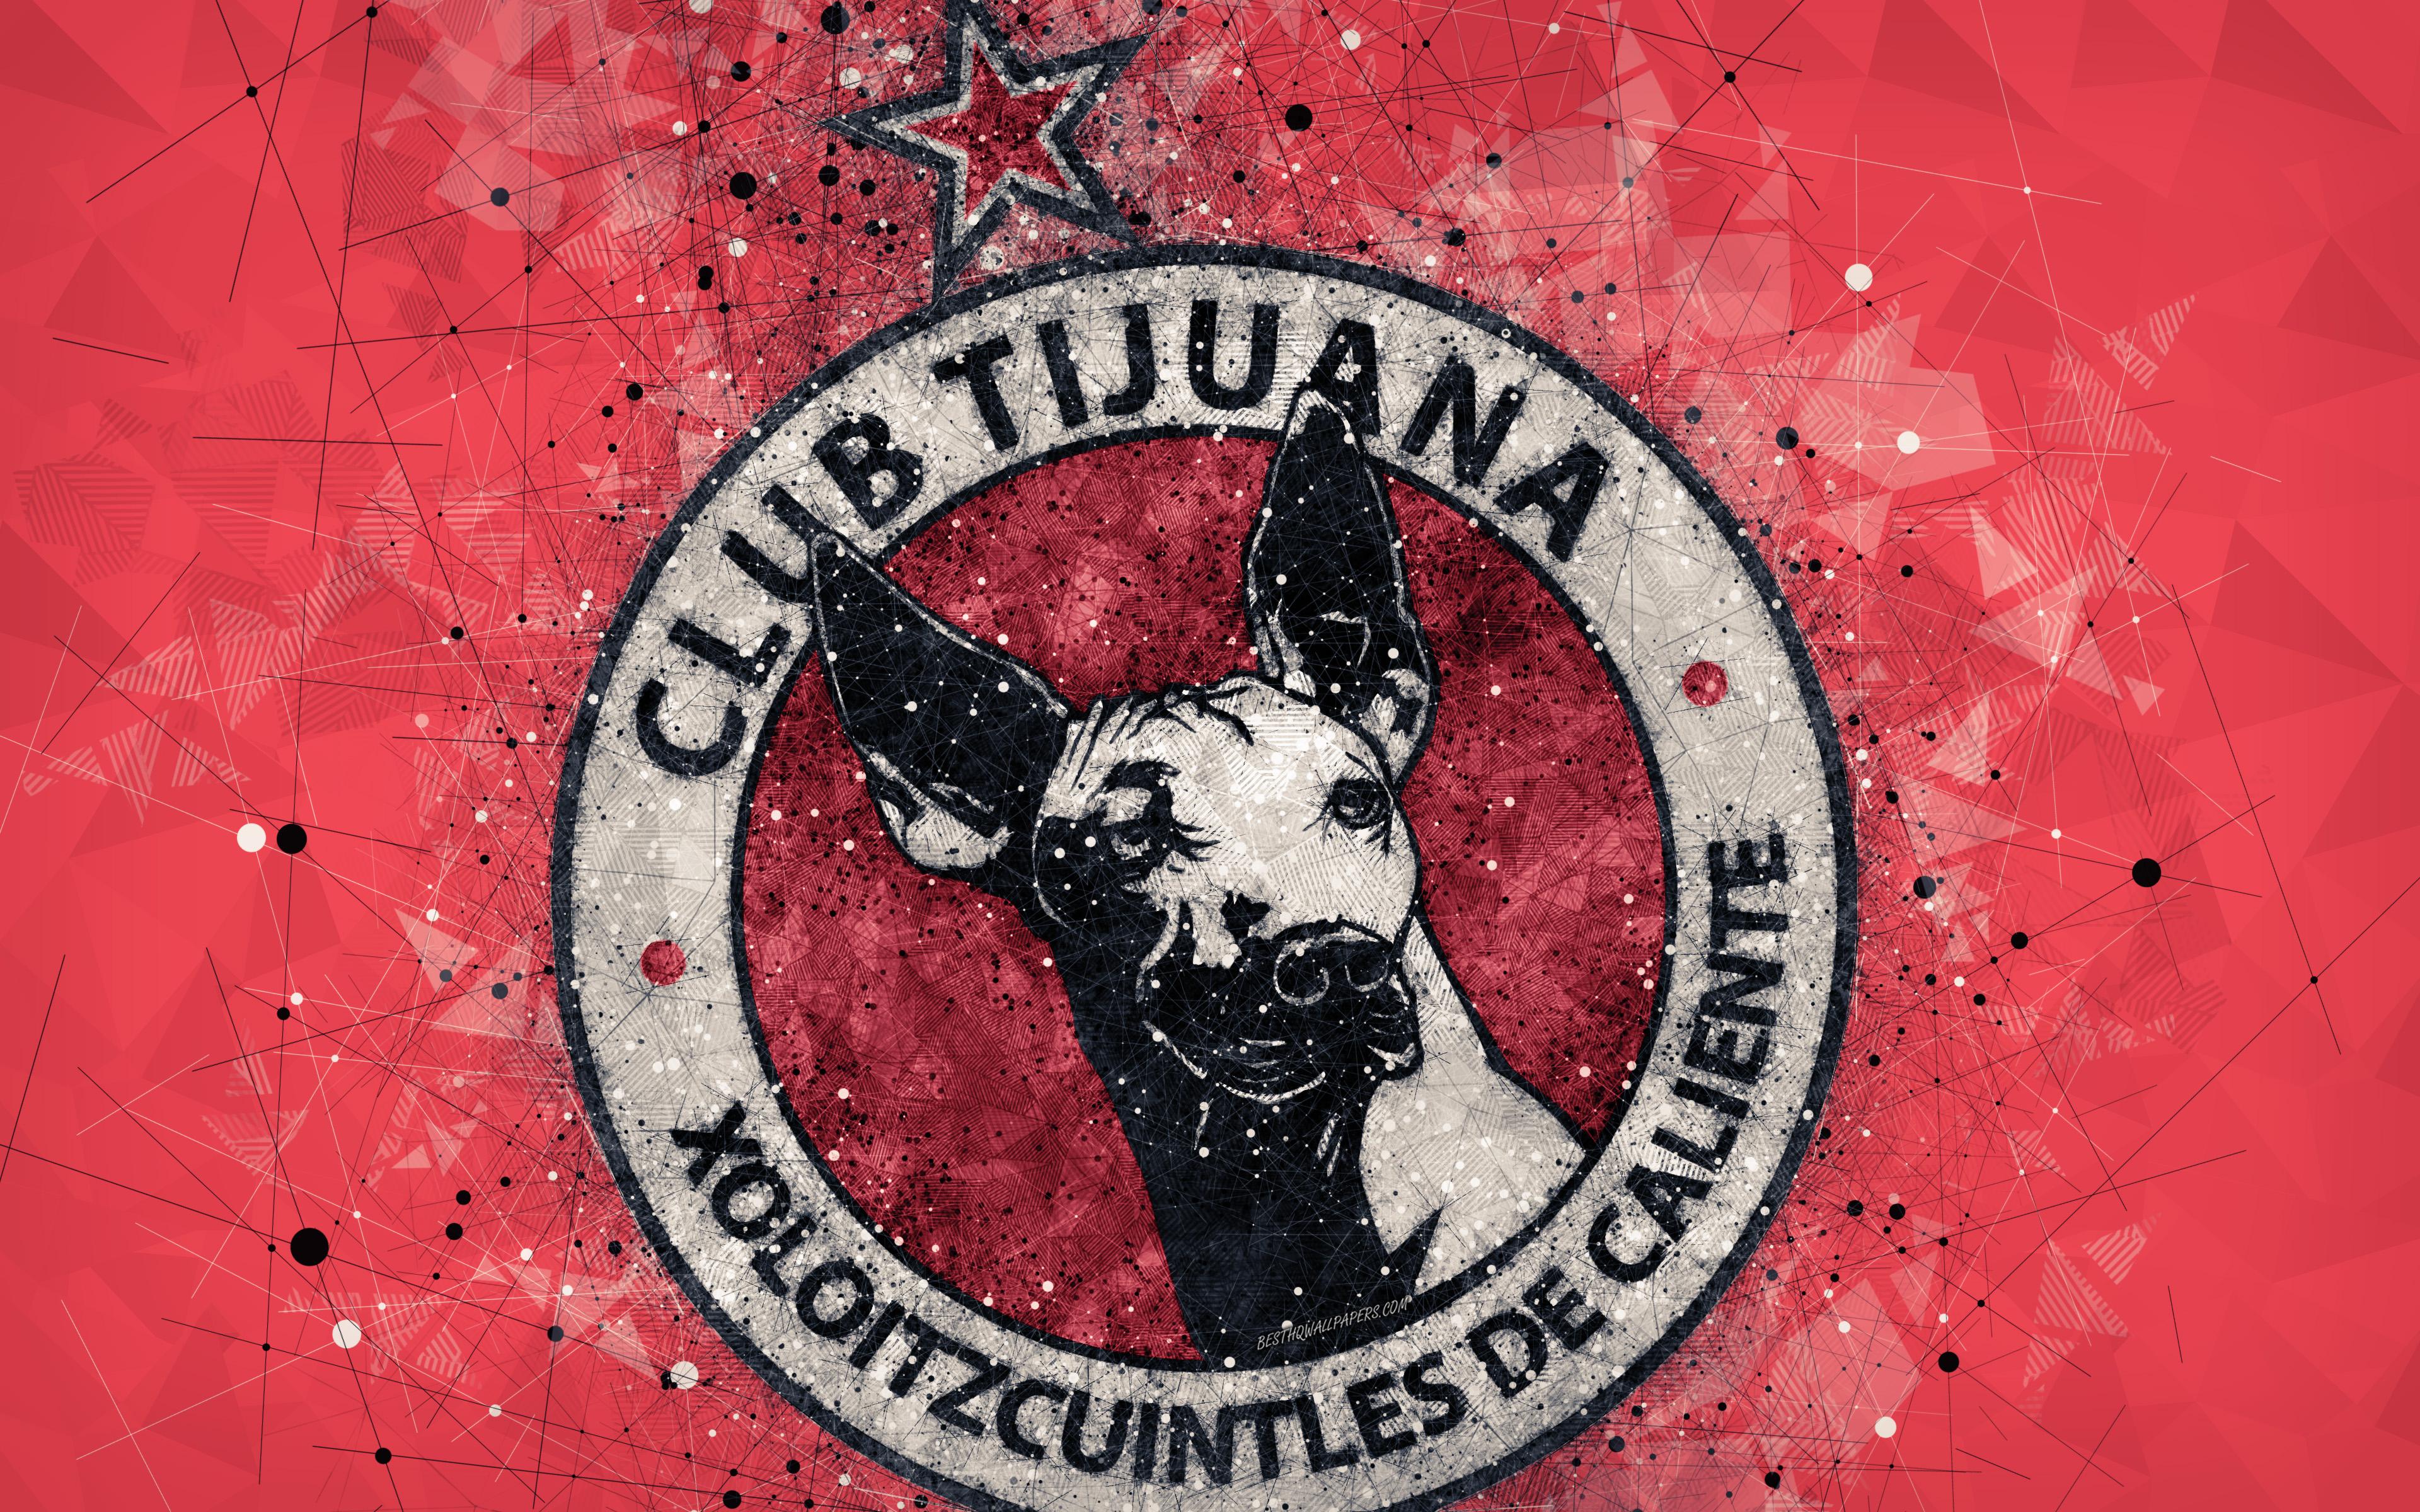 باشگاه فوتبال تیخوانا (Club Tijuana)